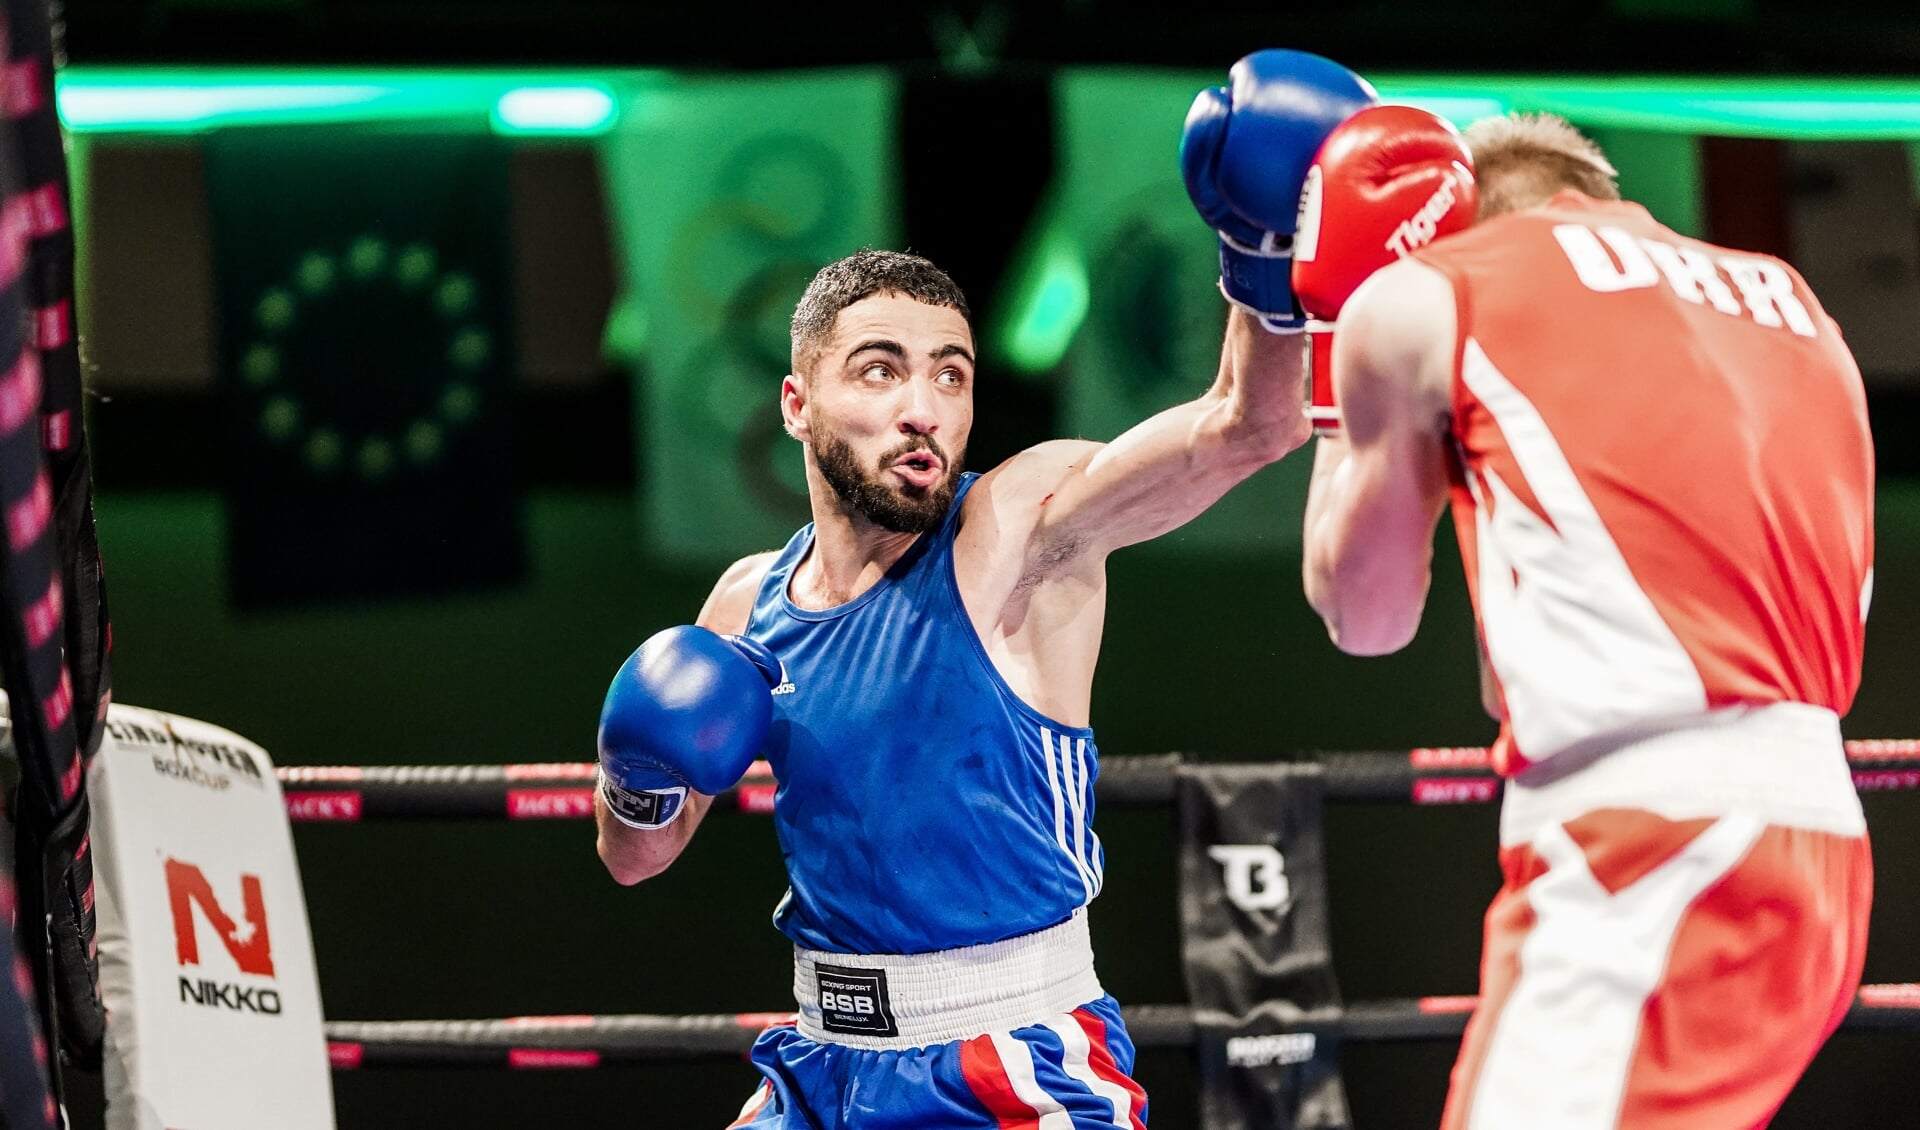 Goud voor Mahmoud Al Chabtoun van Knockout Boxing Club uit Den Bosch.